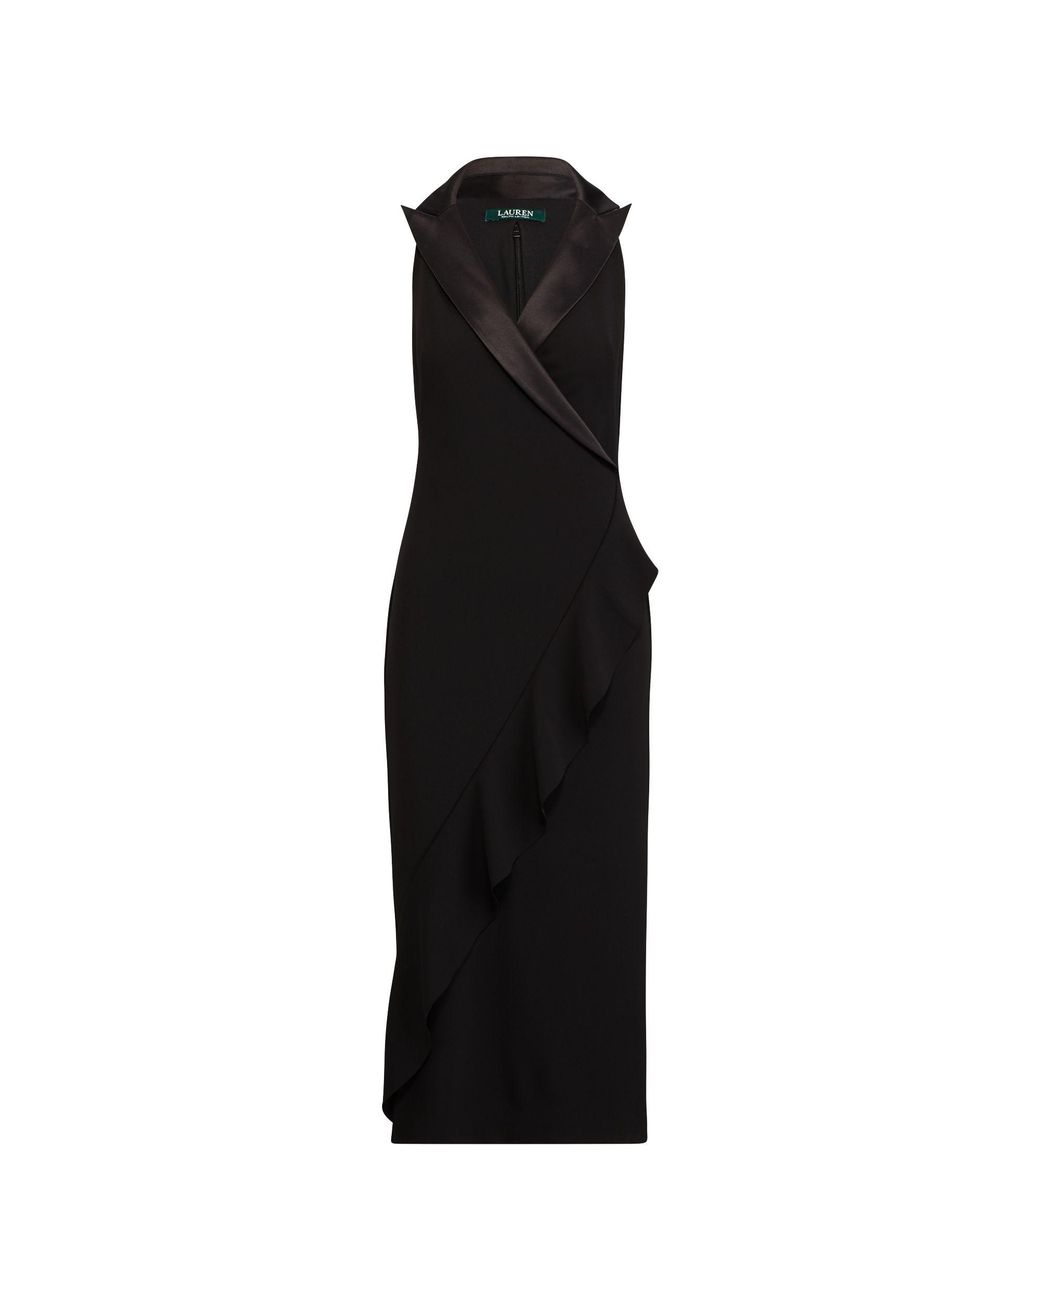 Ralph Lauren Crepe Tuxedo Dress in Black | Lyst